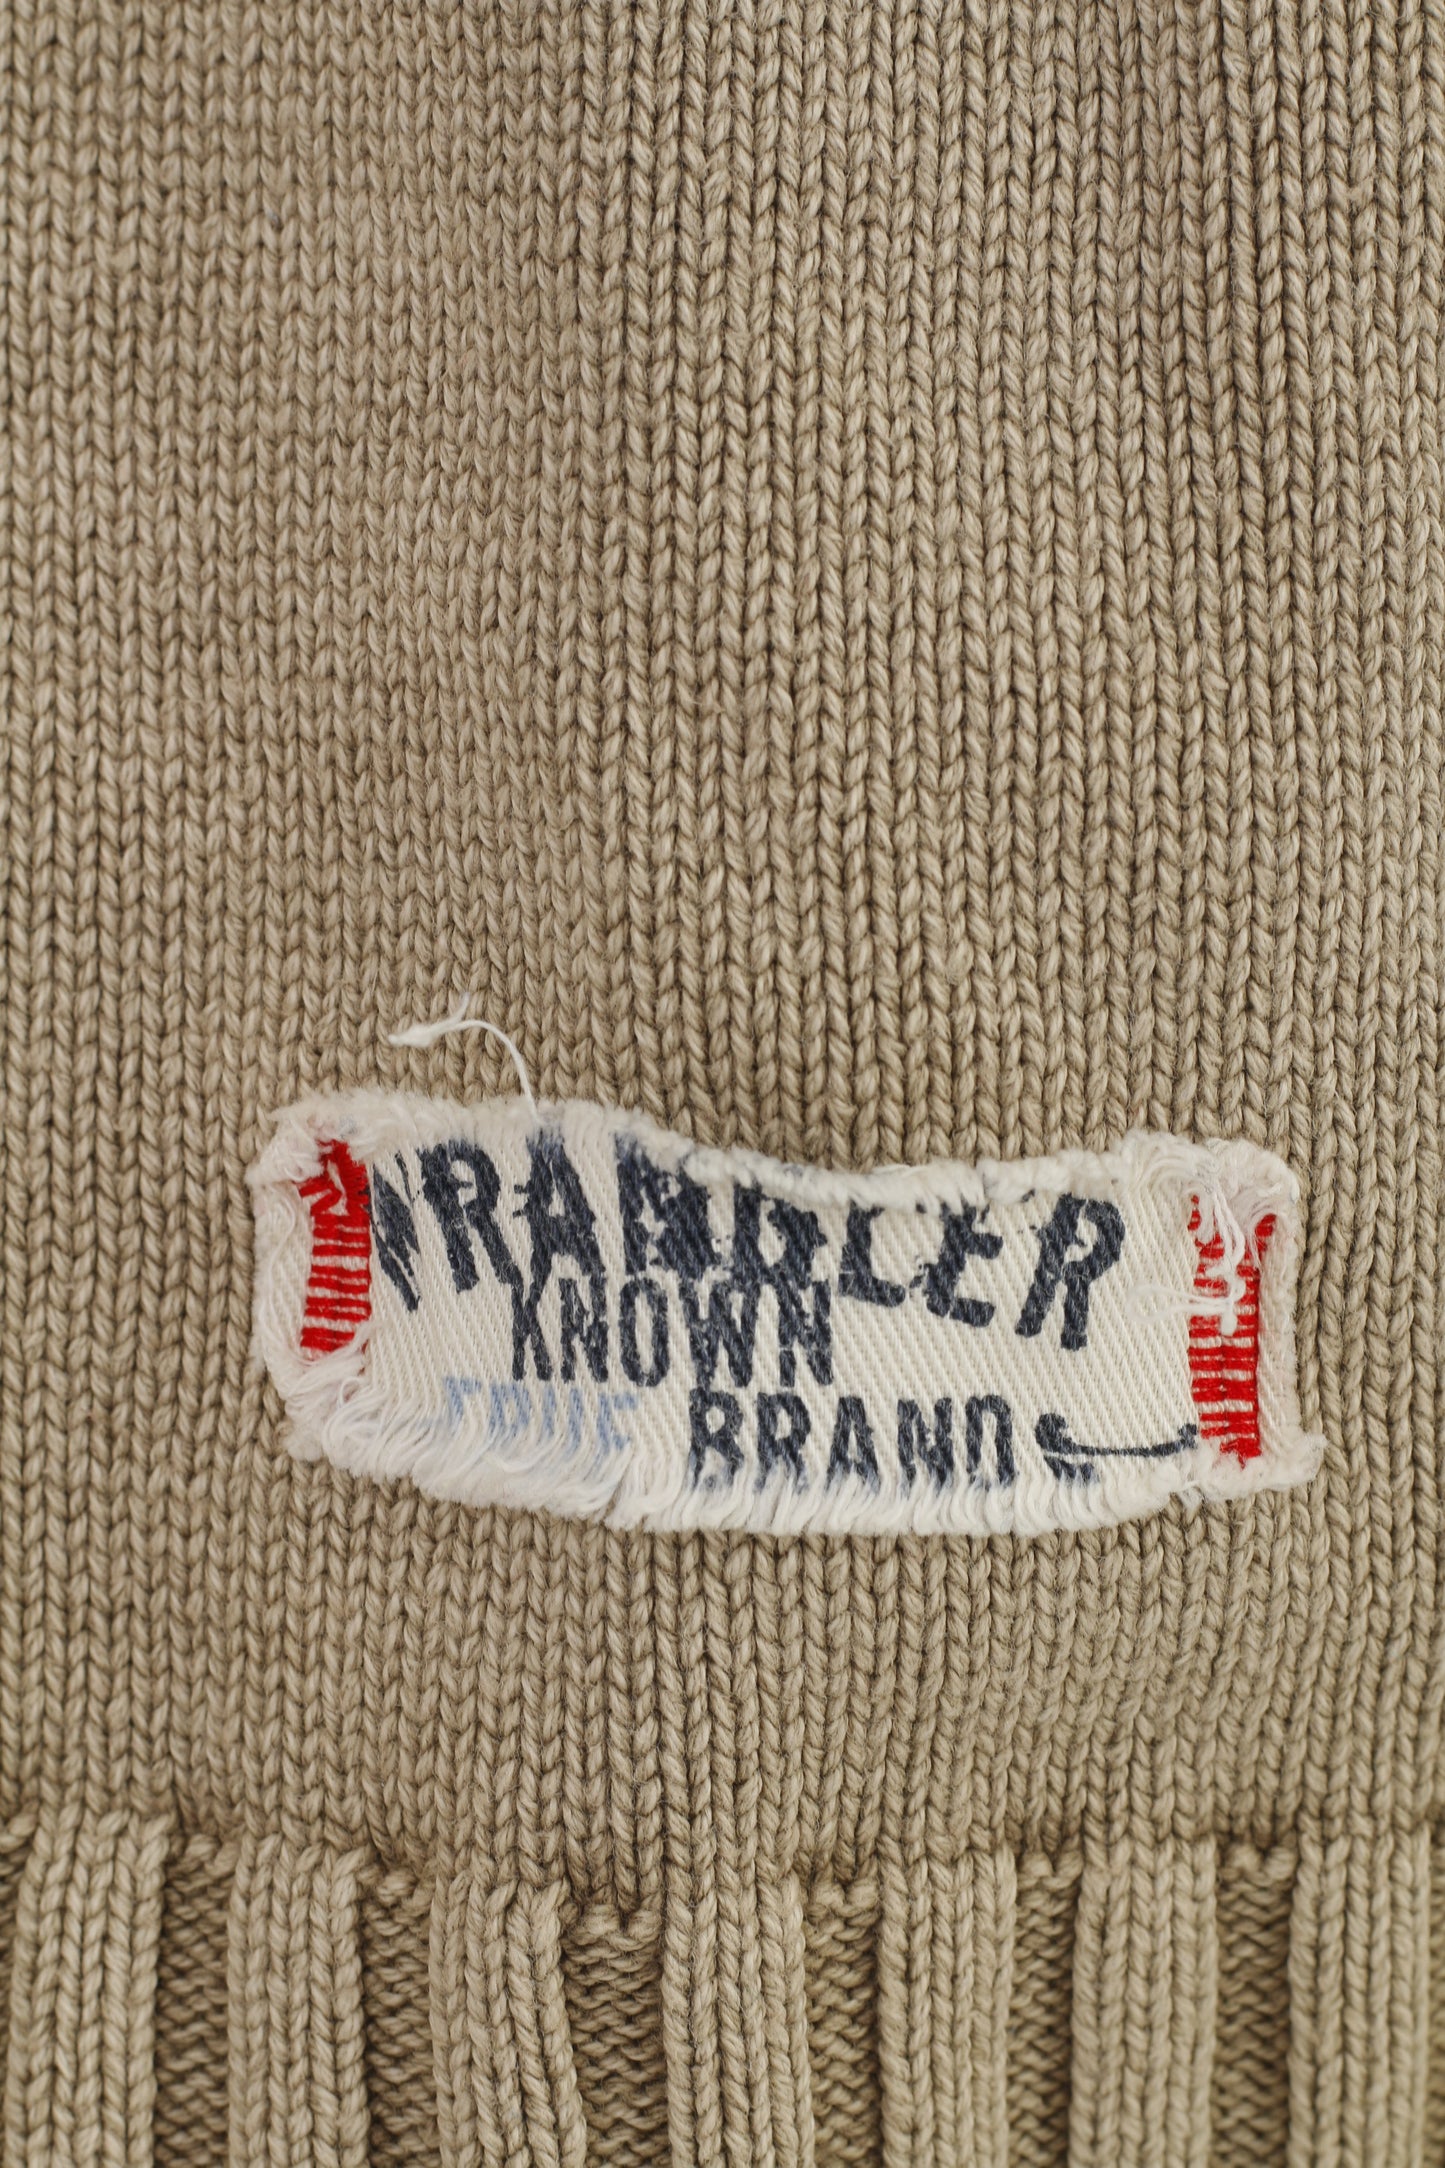 Wrangler Men M Jumper Brown Cotton Zip Neck Vintage Classic Sweater